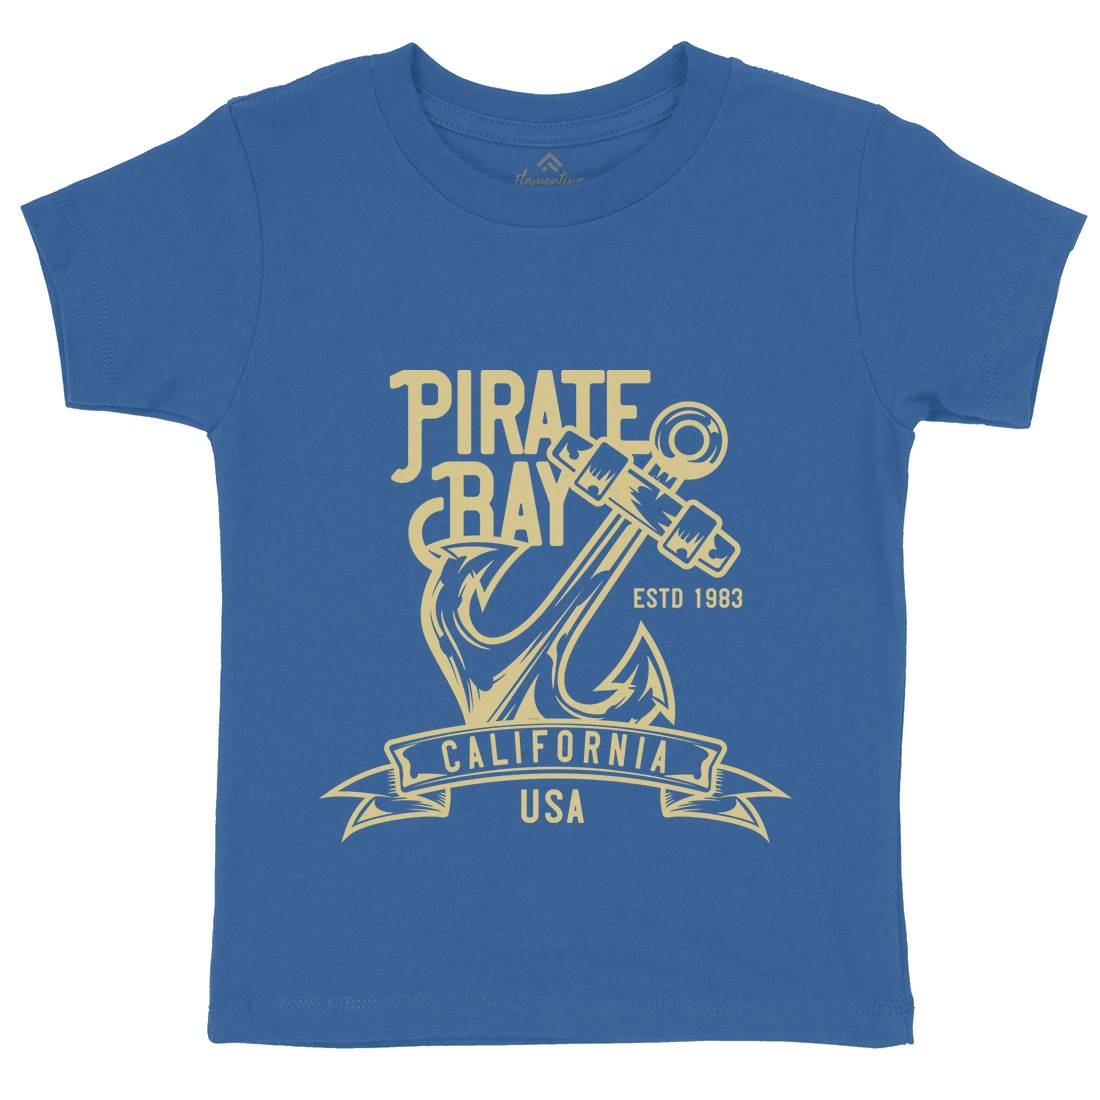 Pirate Kids Organic Crew Neck T-Shirt Navy B159